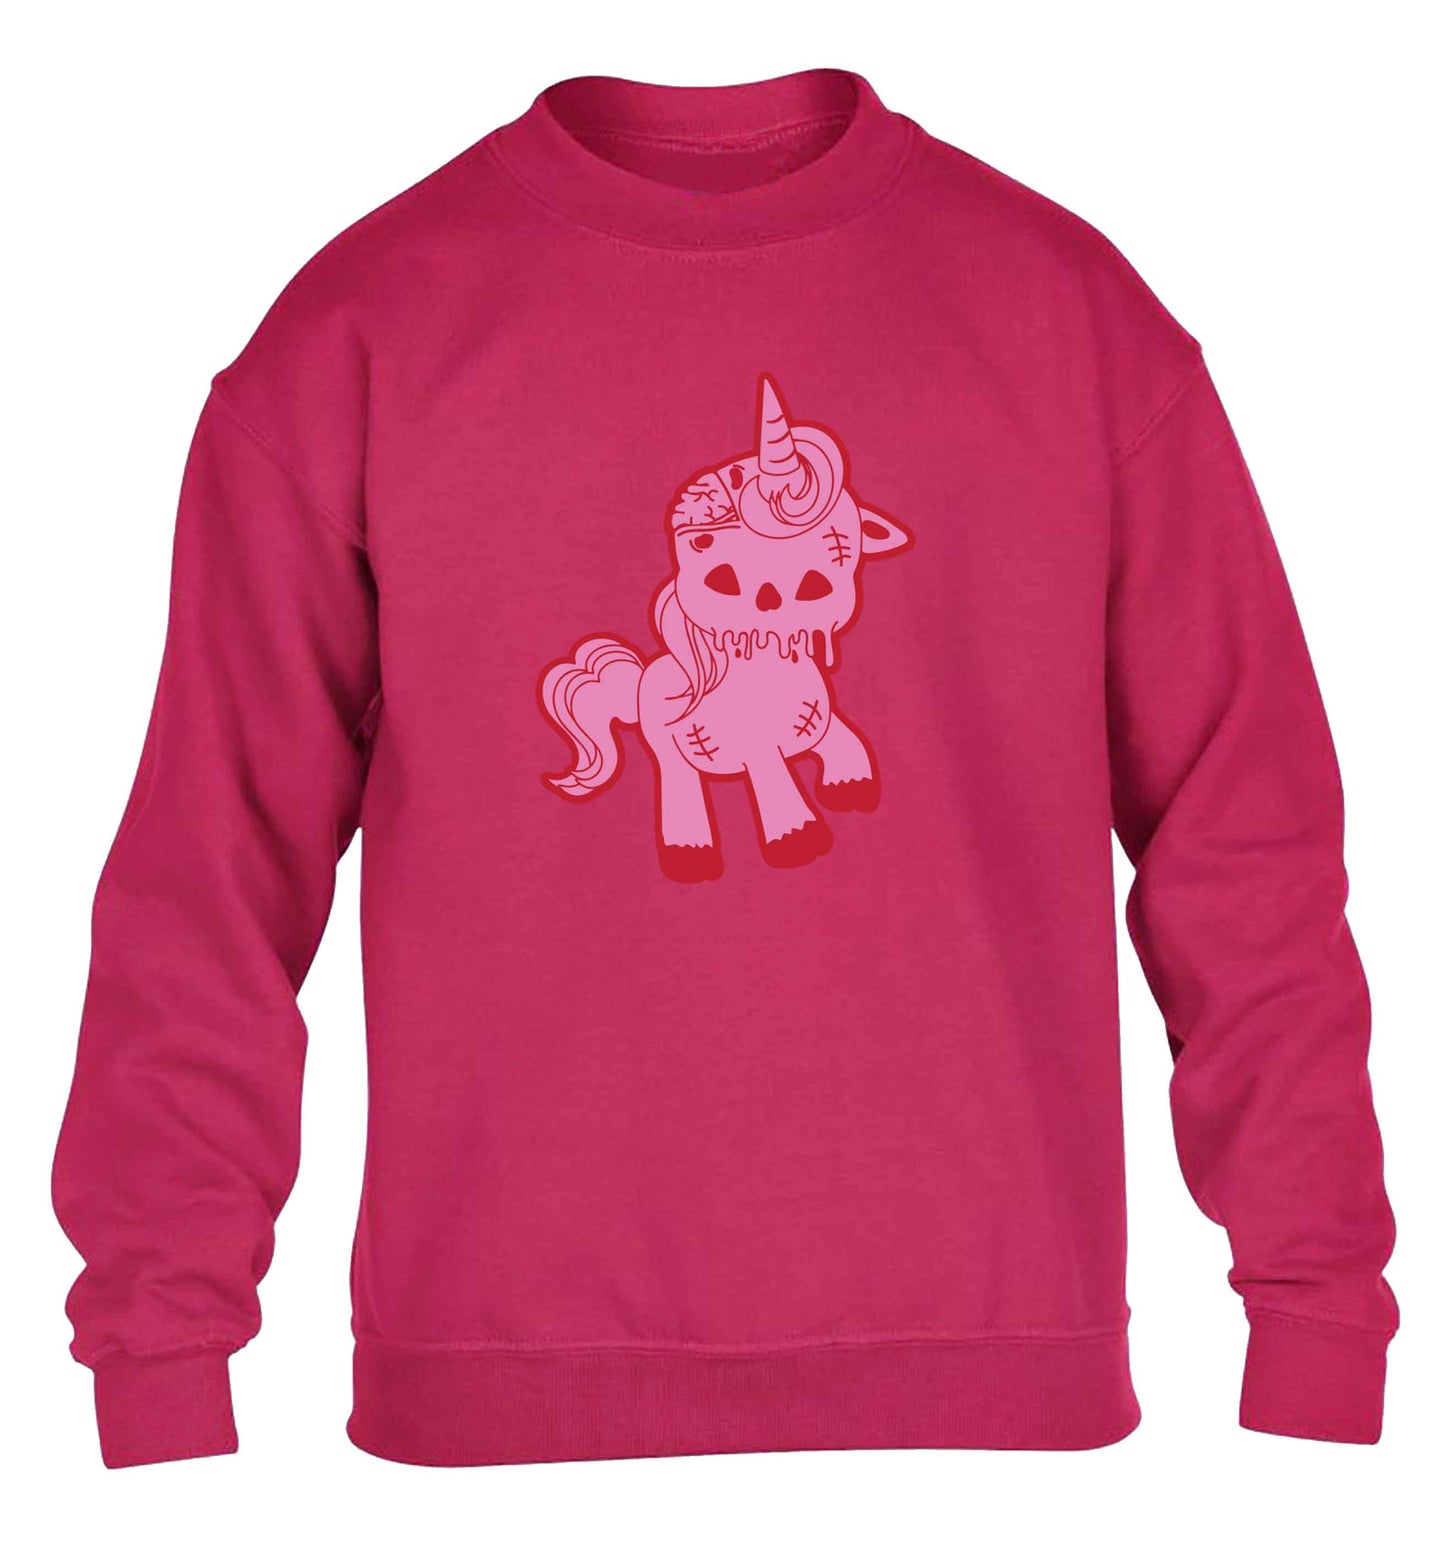 Zombie unicorn zombiecorn children's pink sweater 12-13 Years